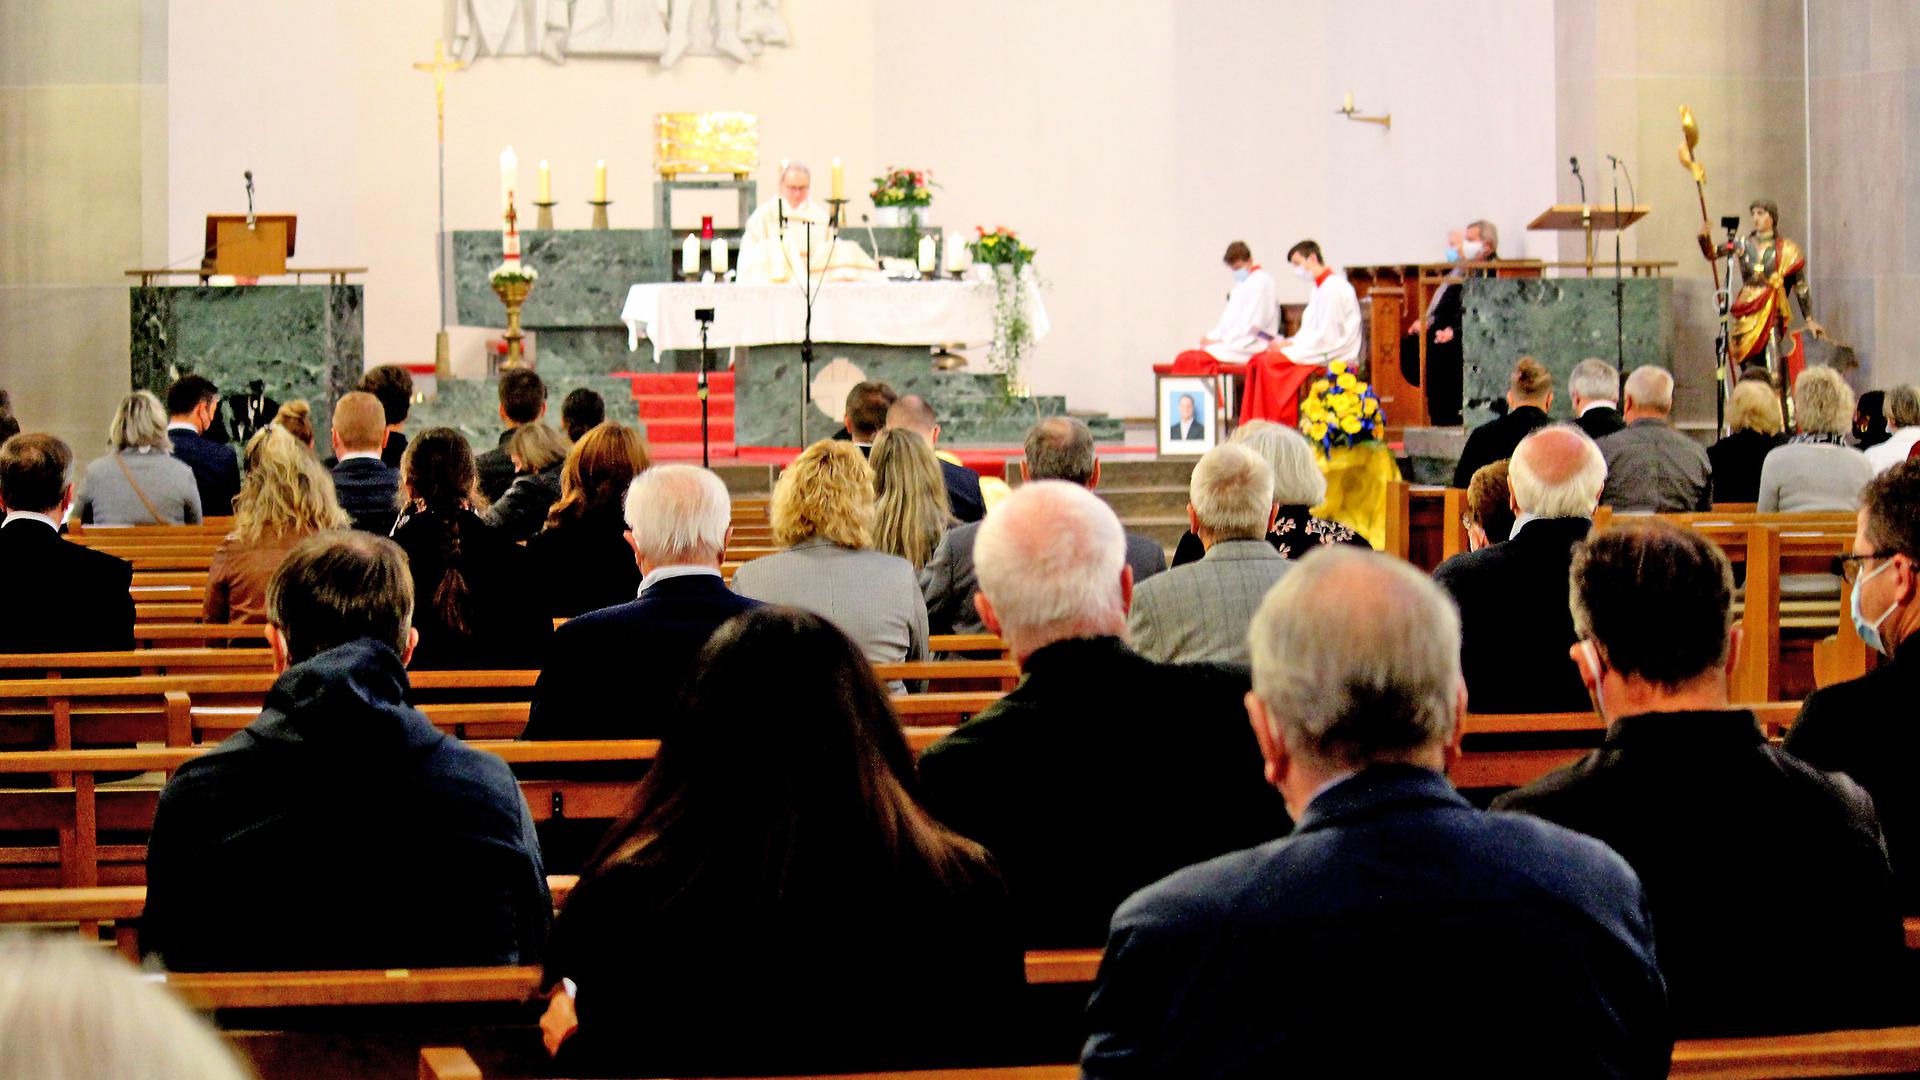 Seelenamt in St. Wendelin: Knapp 170 Menschen nahmen am Sonntag in der Weisenbacher Pfarrkirche Abschied von Toni Huber. Der frühere Bürgermeister und Landrat starb Ende Mai.